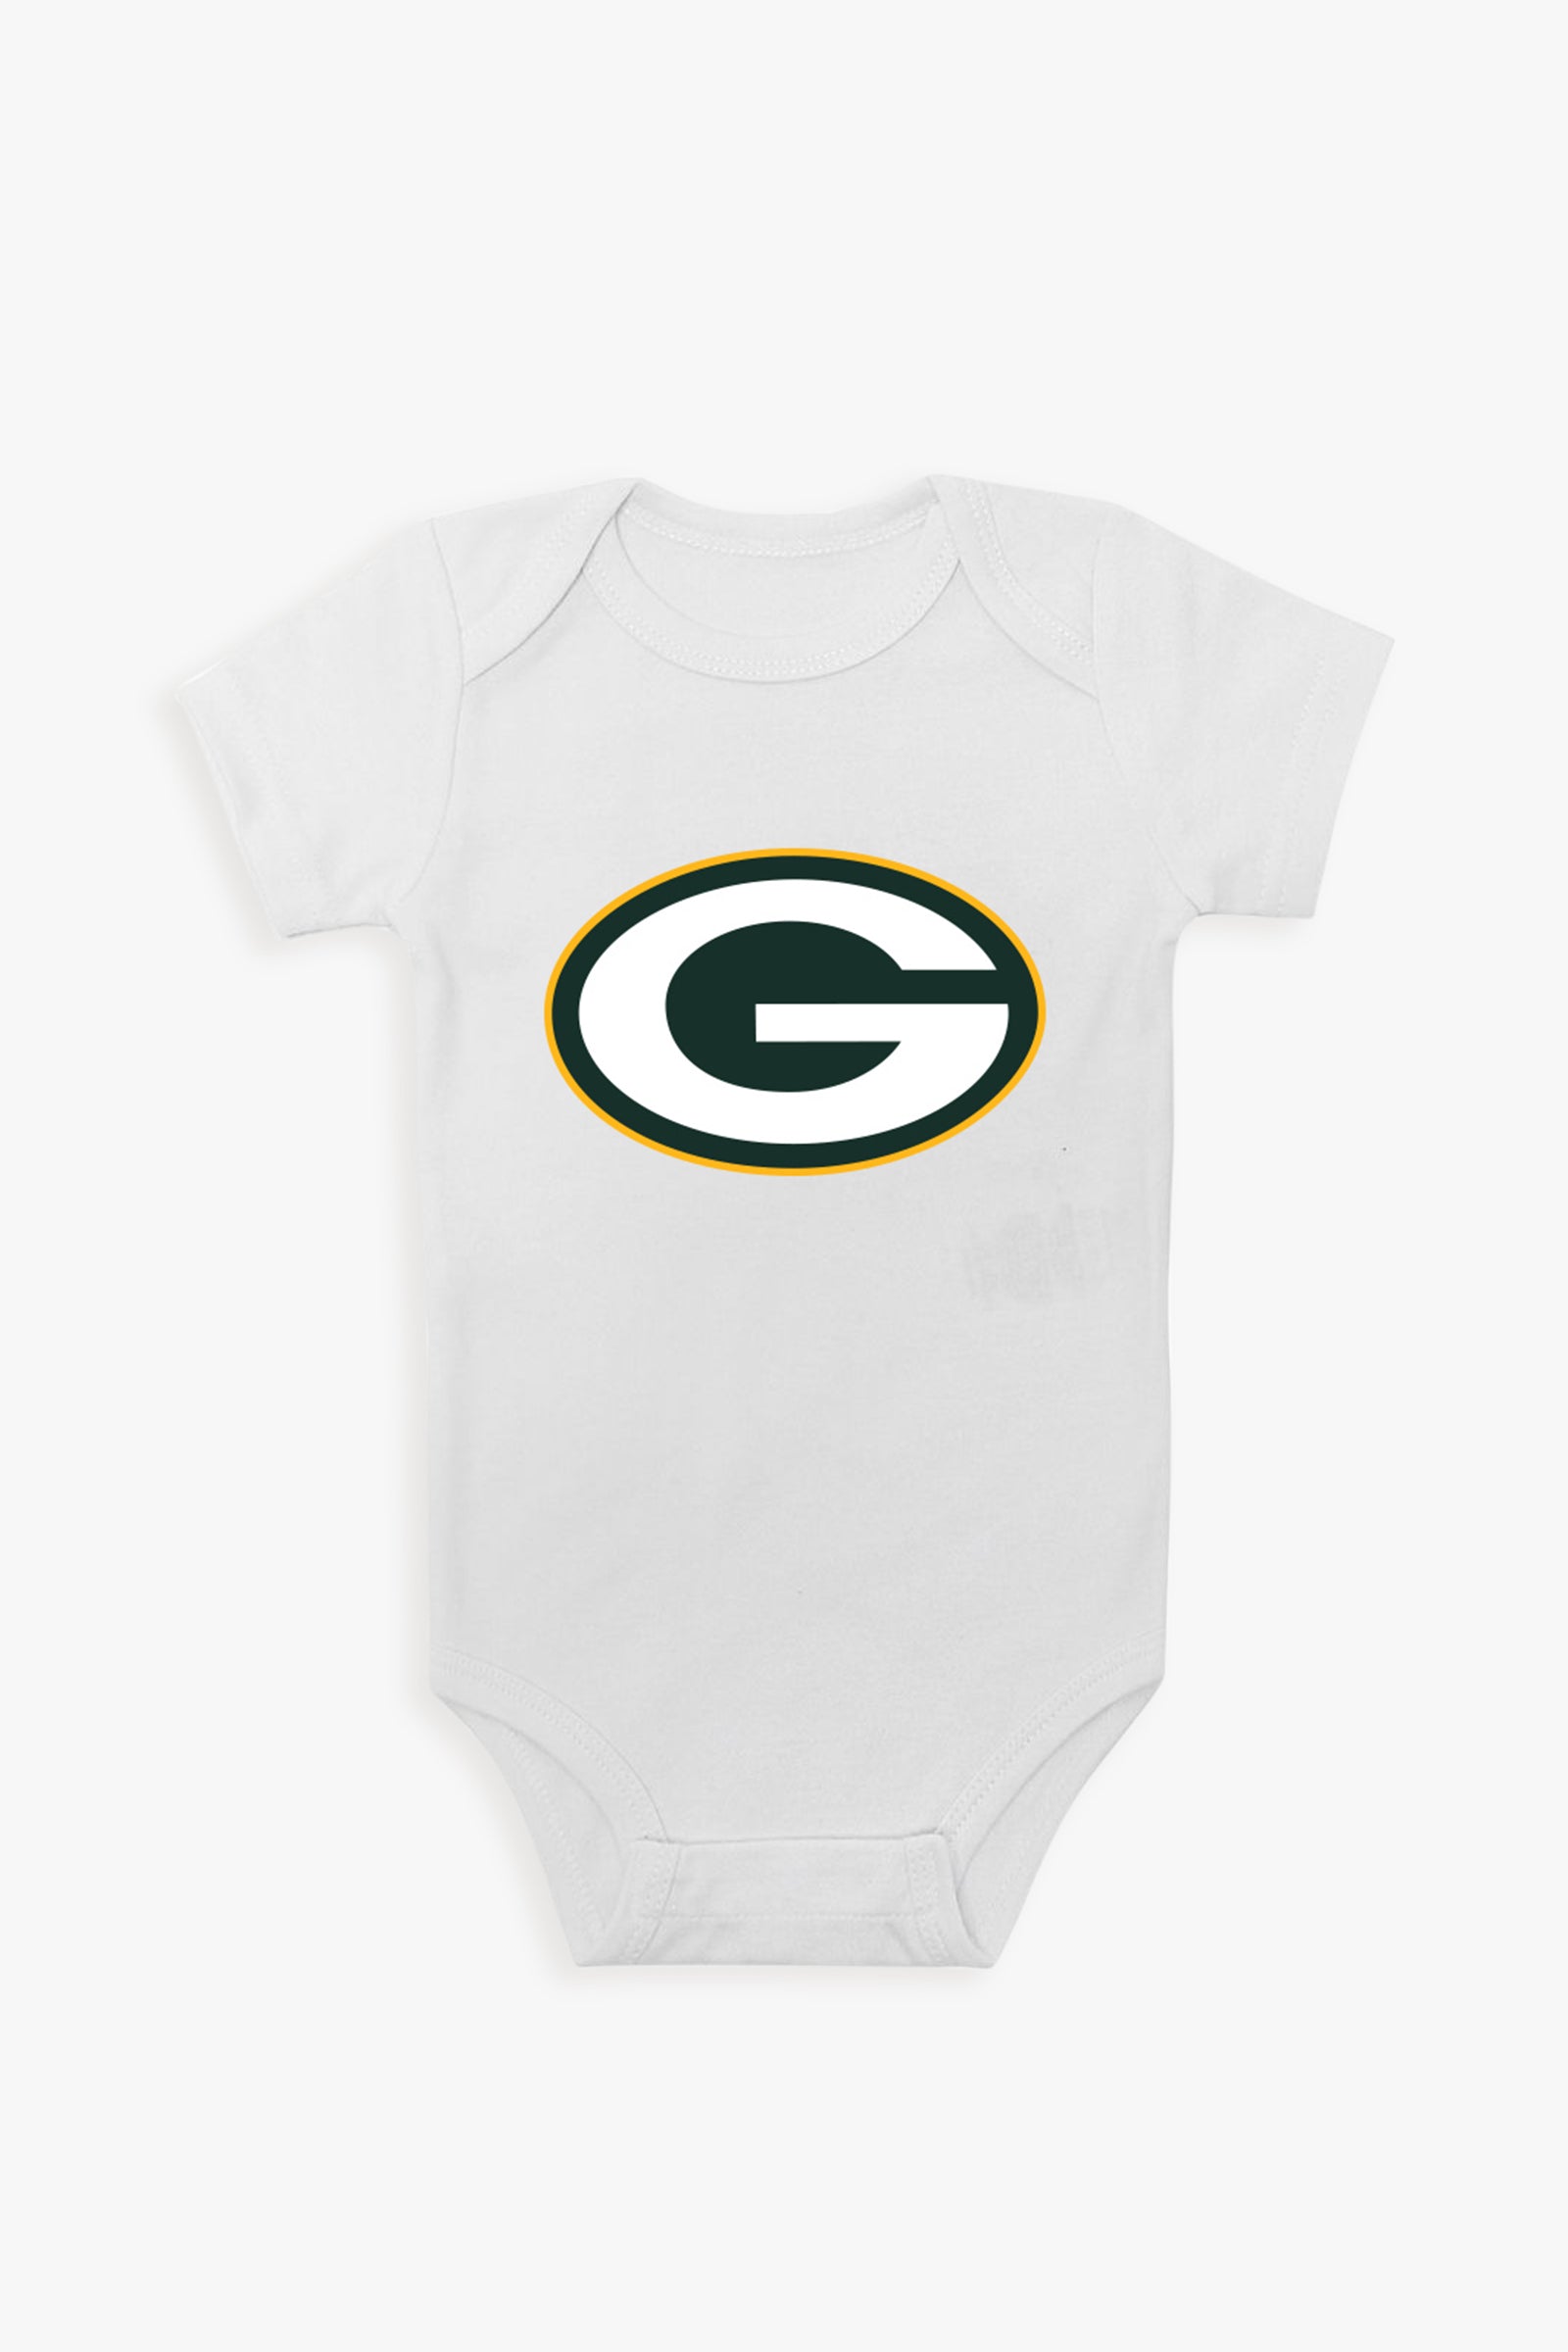 Gertex NFL White Baby Short-Sleeve Bodysuit - NFC Division